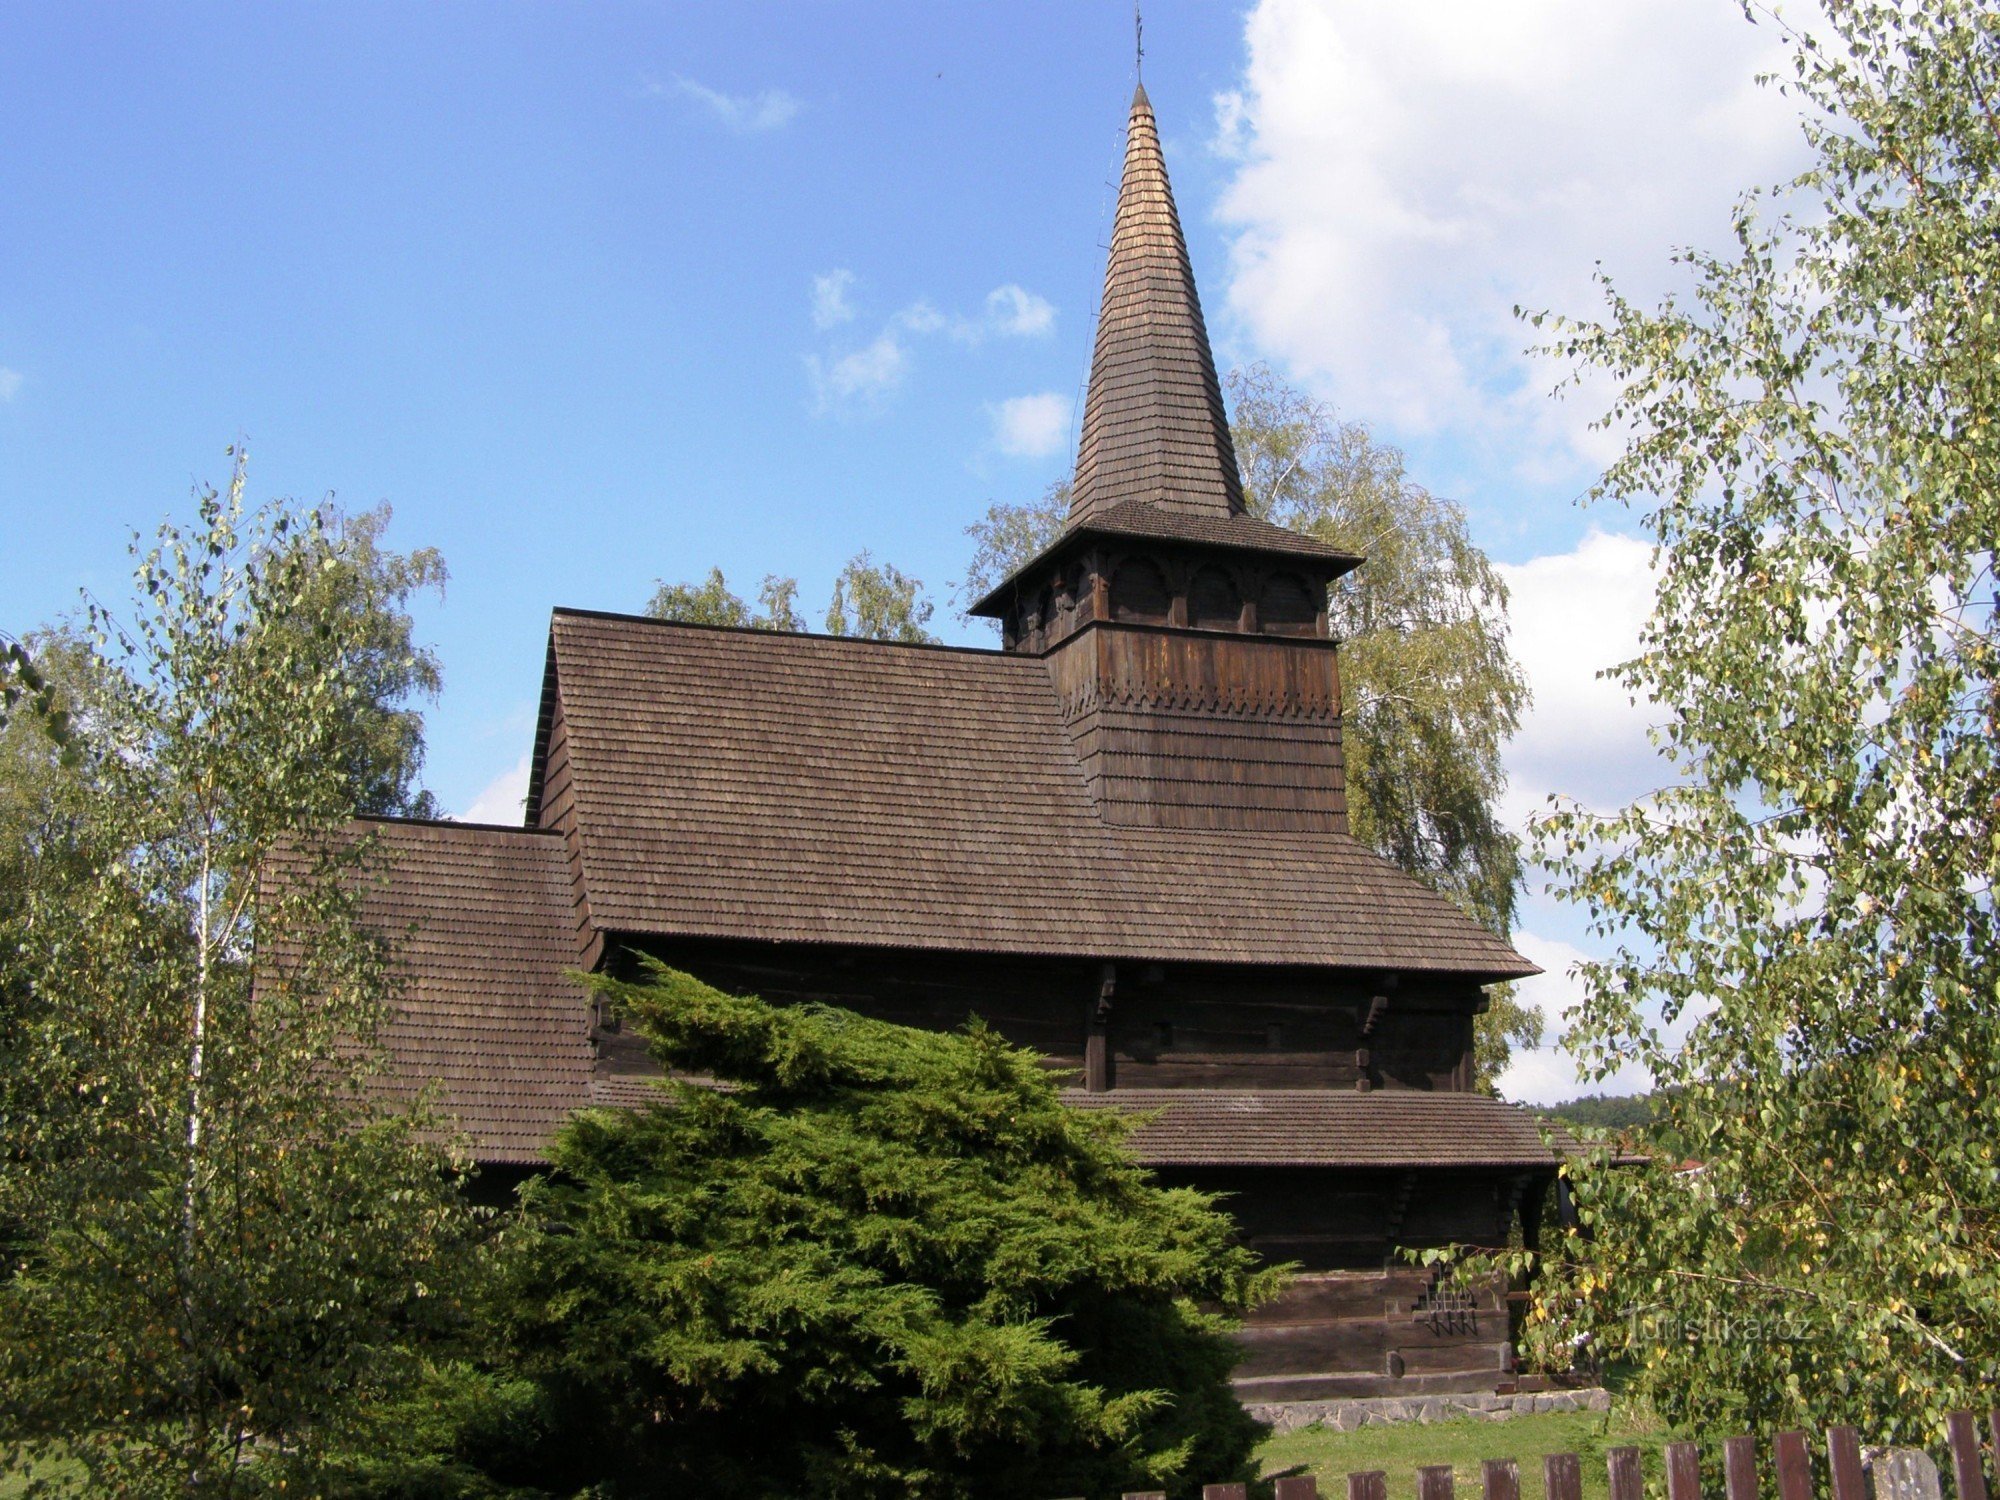 Dobříkov - Holzkirche Allerheiligen